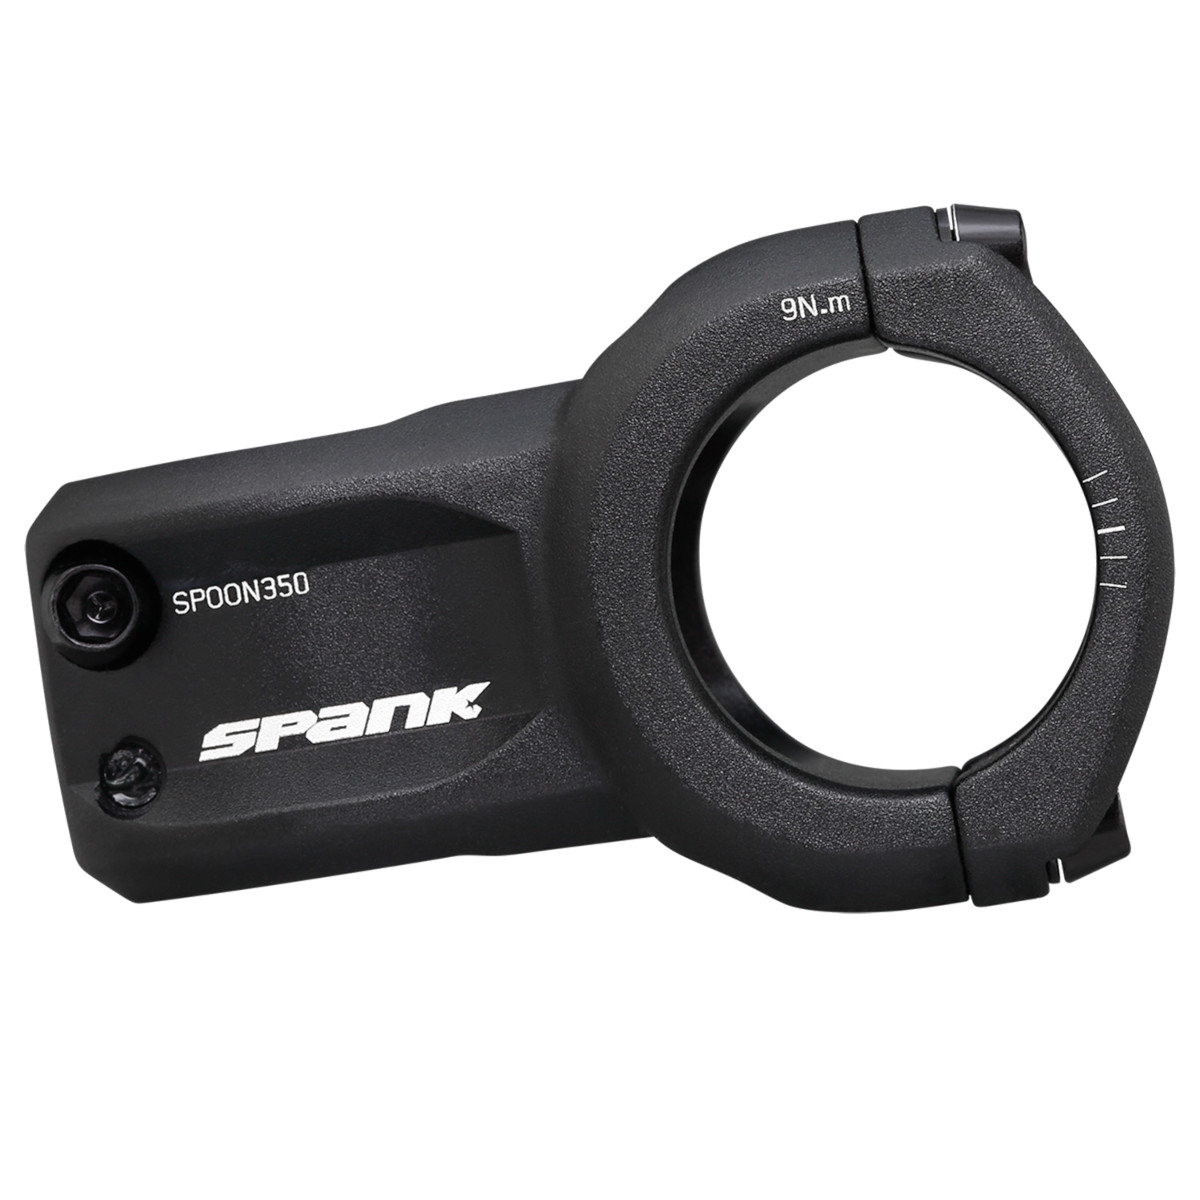 Produktbild von Spank Spoon 350 Vorbau - 35mm - schwarz